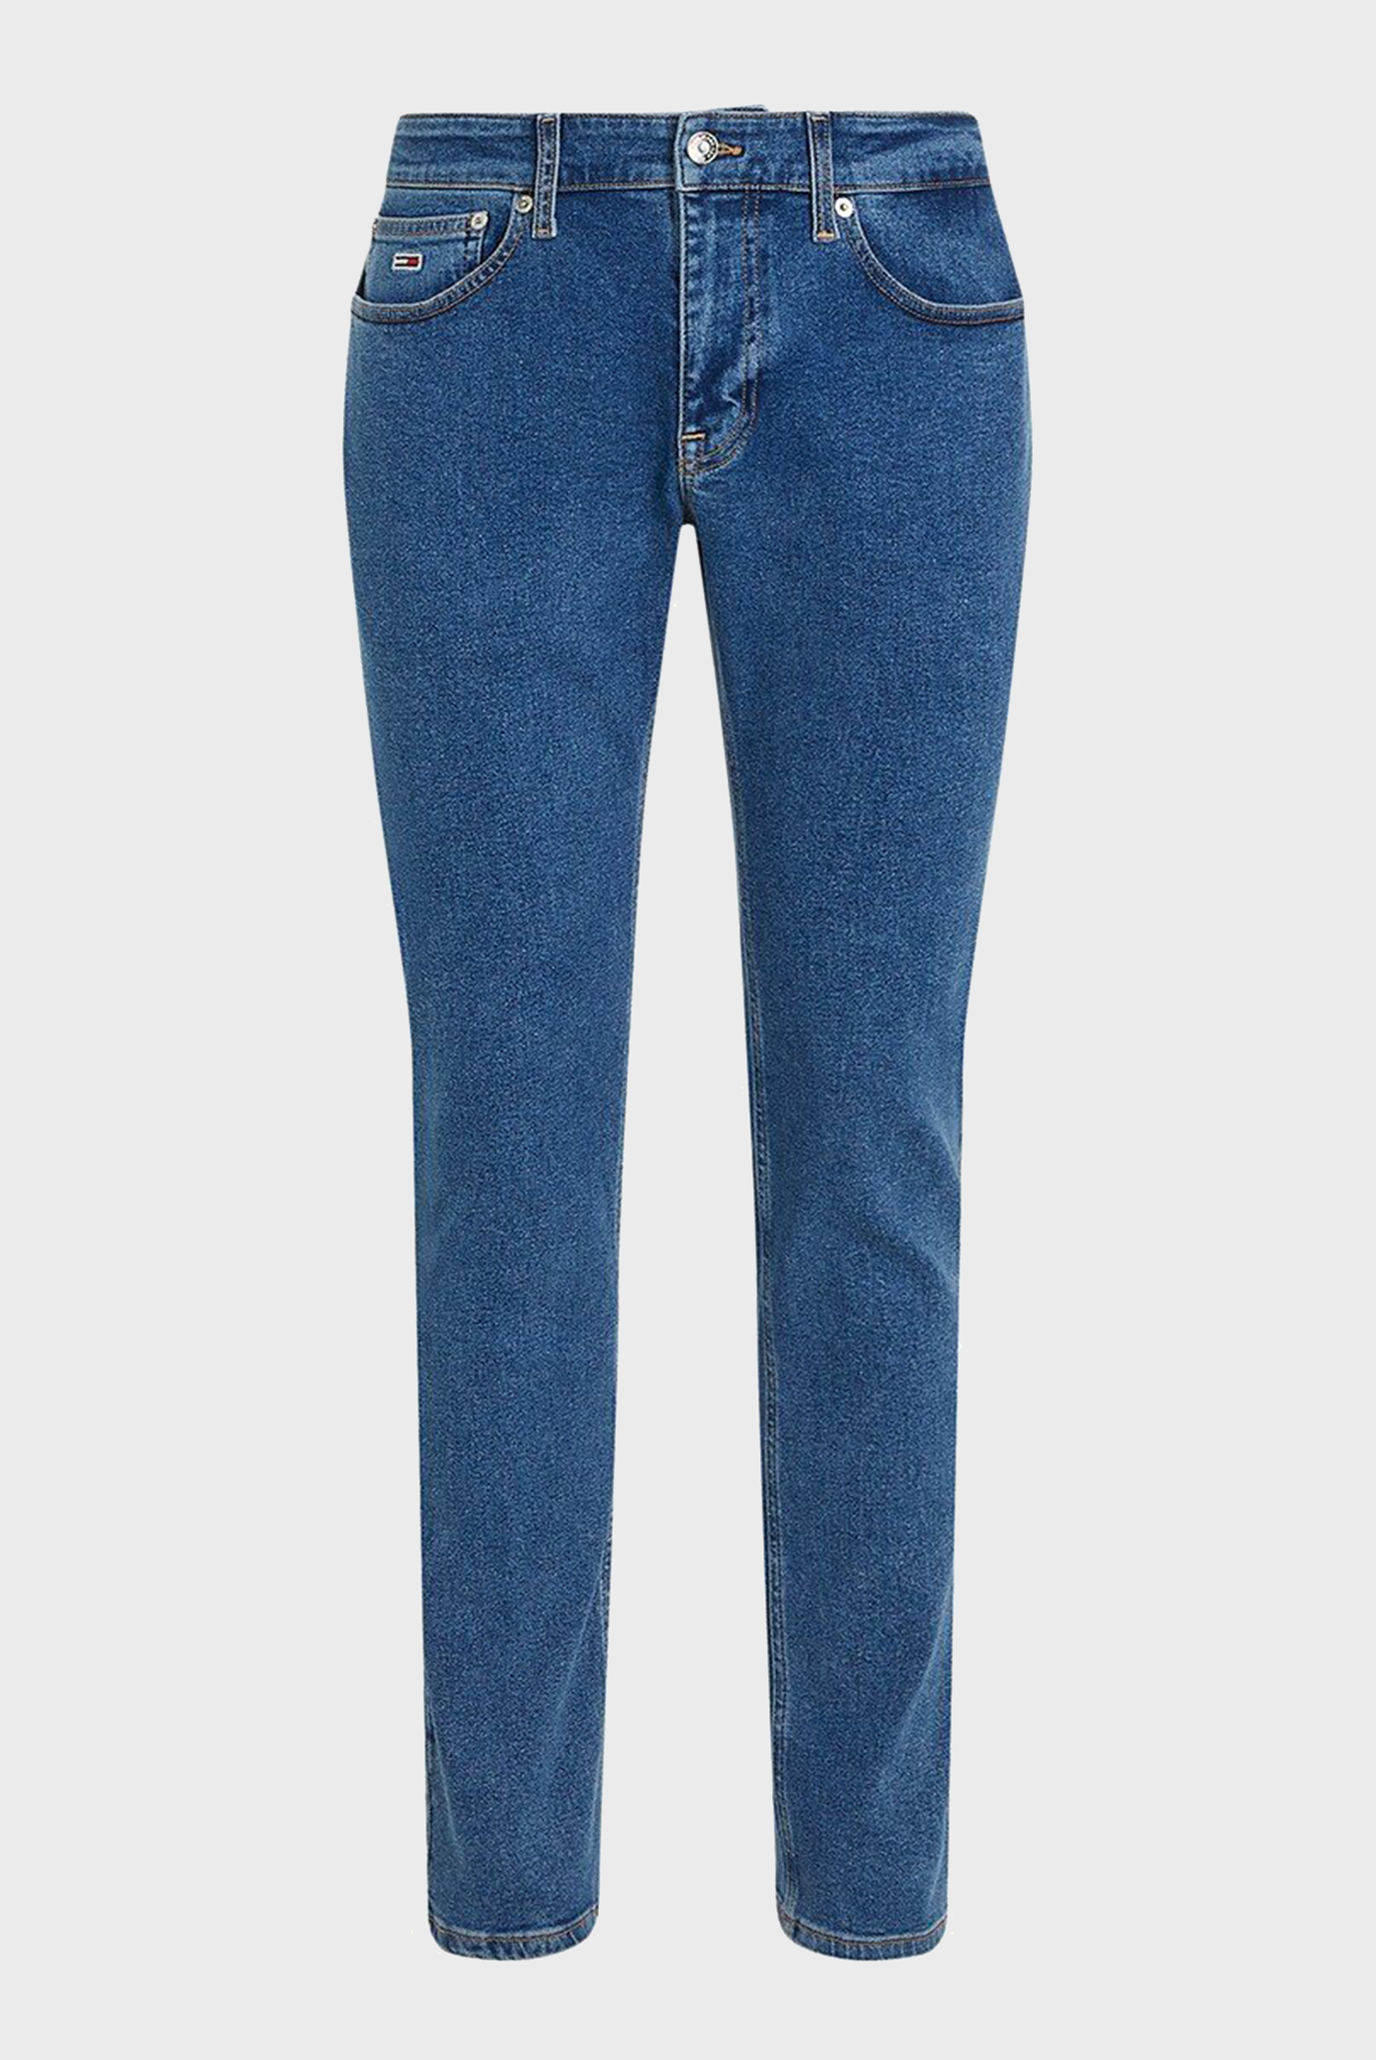 Мужские синие джинсы SCANTON SLIM 1